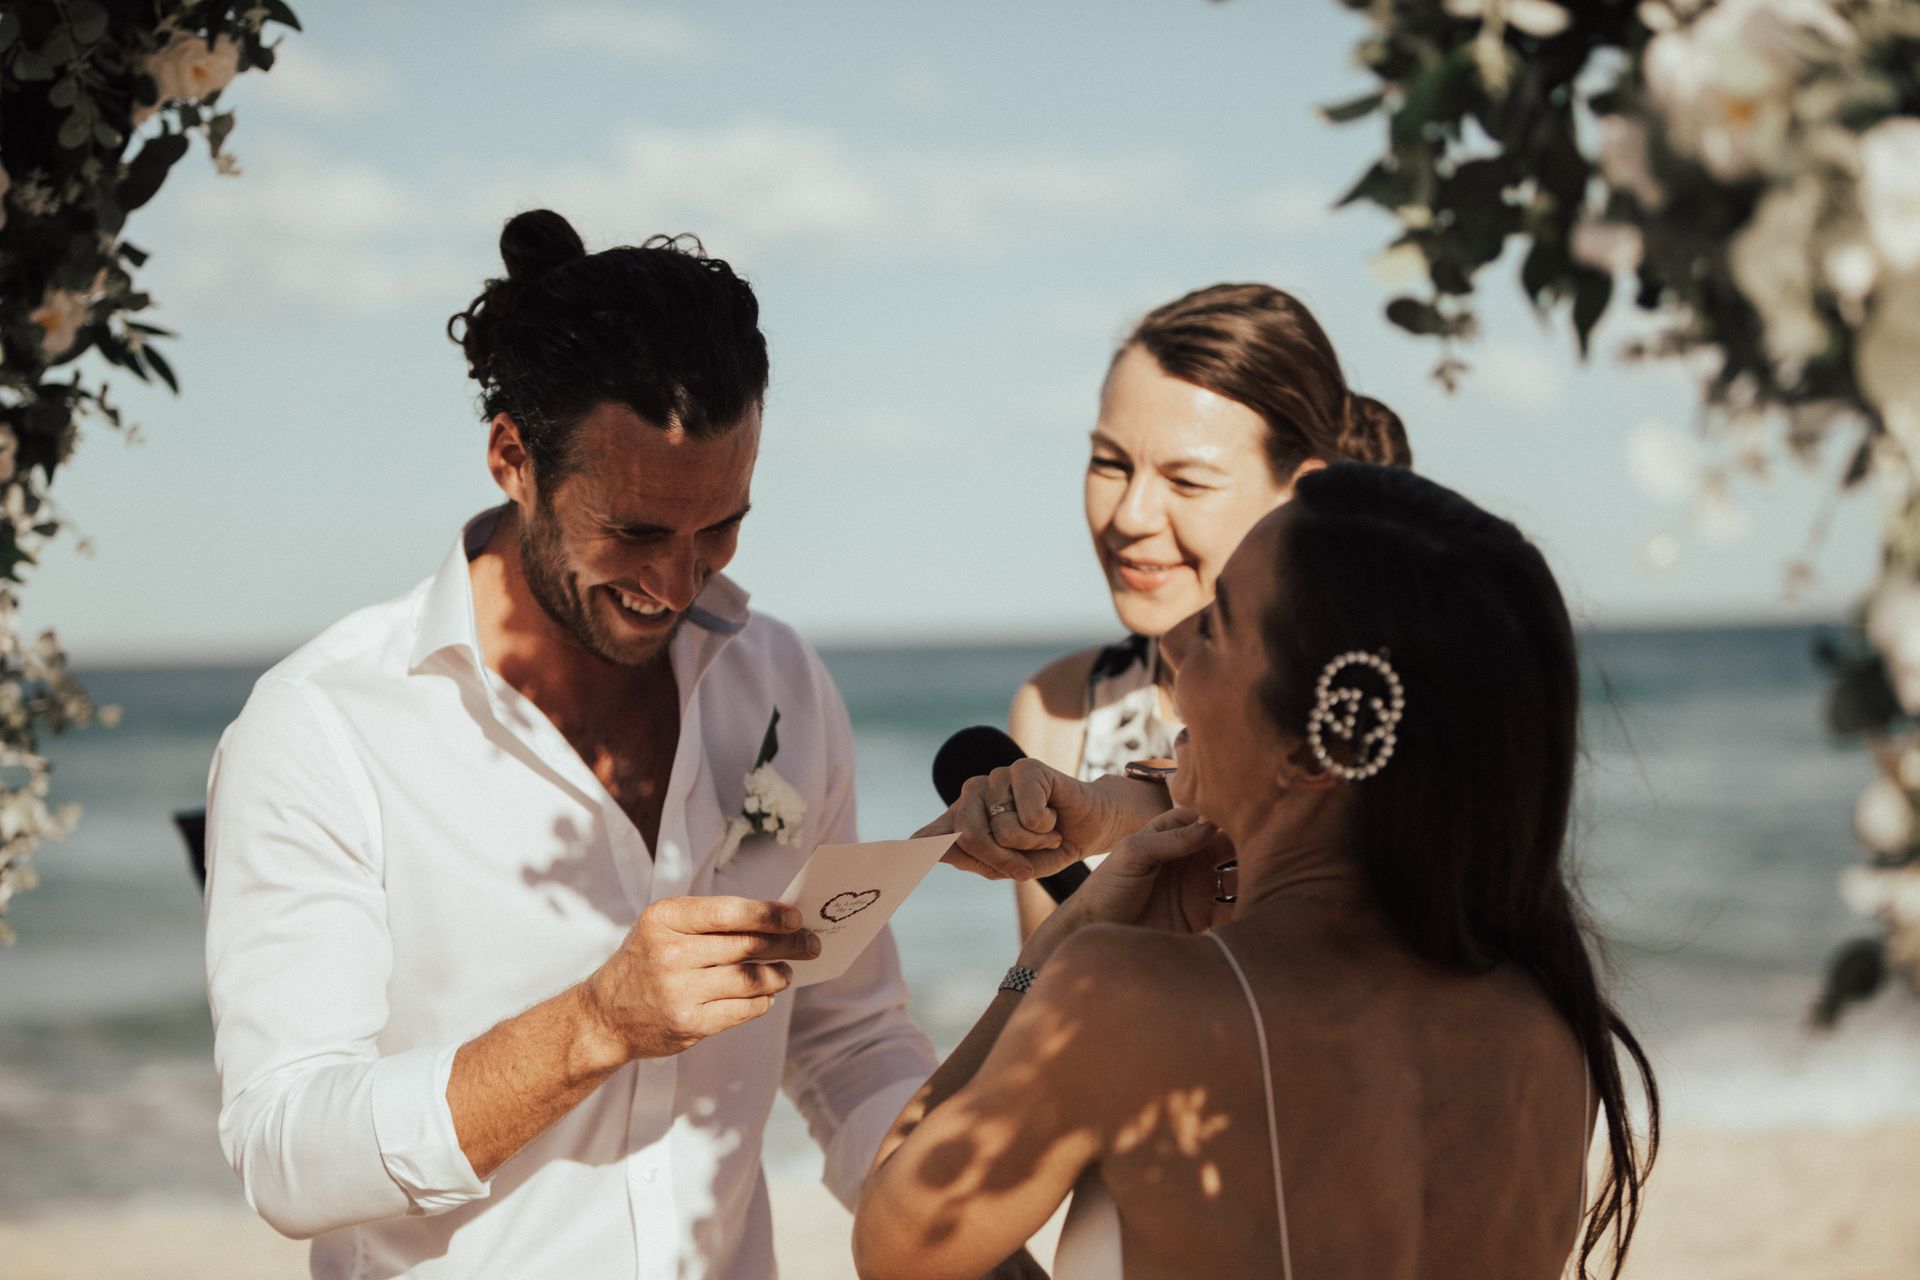 Sunset wedding vows Sunshine Coast Noosa Wedding Celebrant